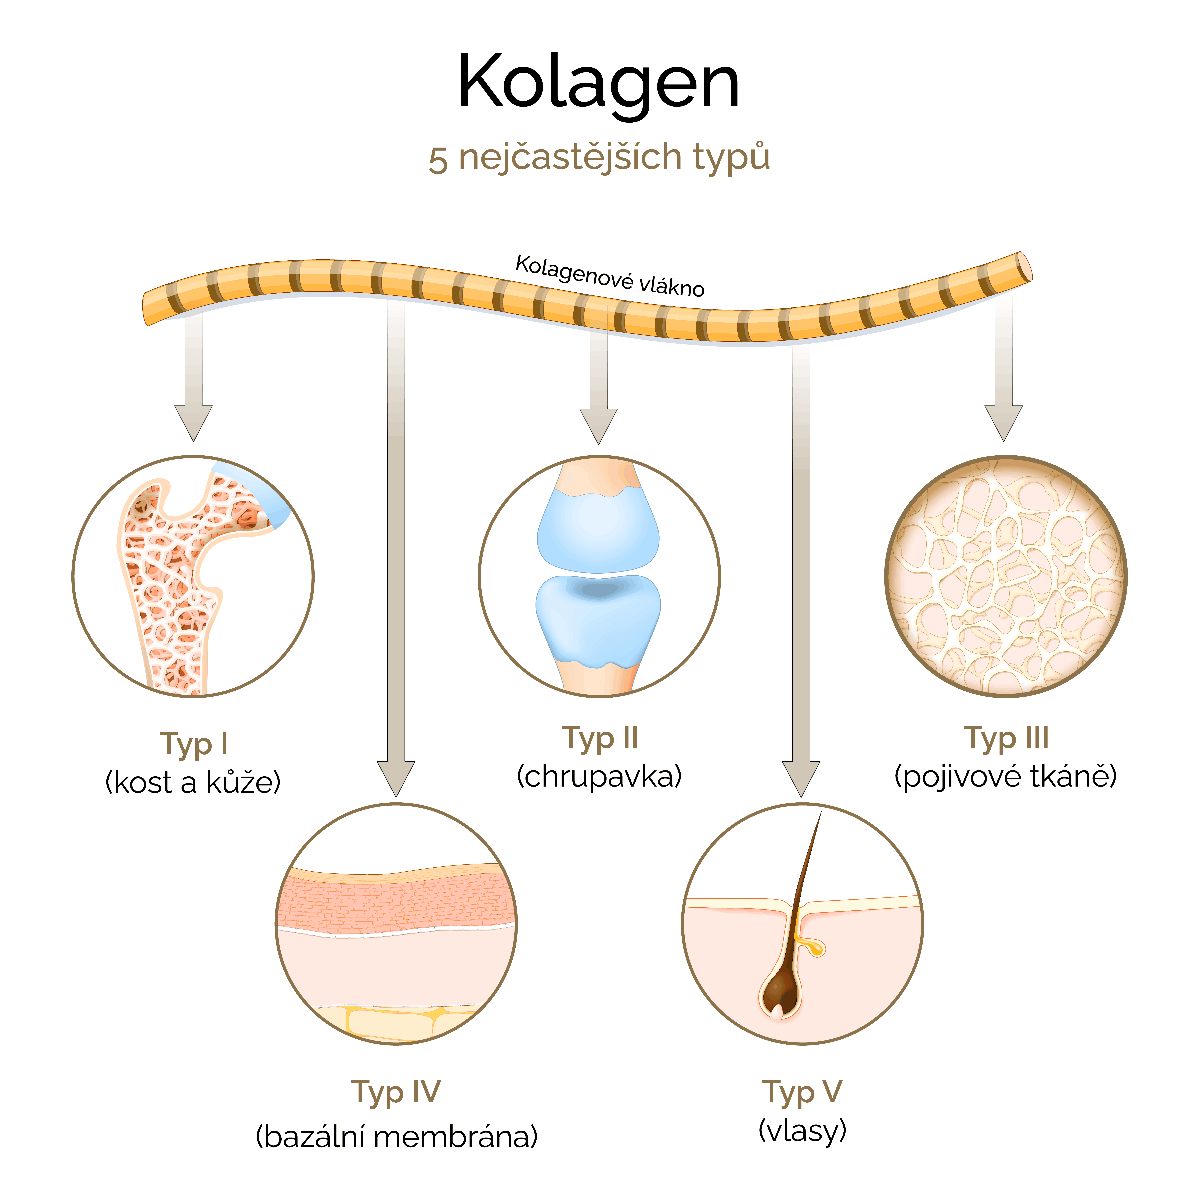 Jak se tvoří kolagen?